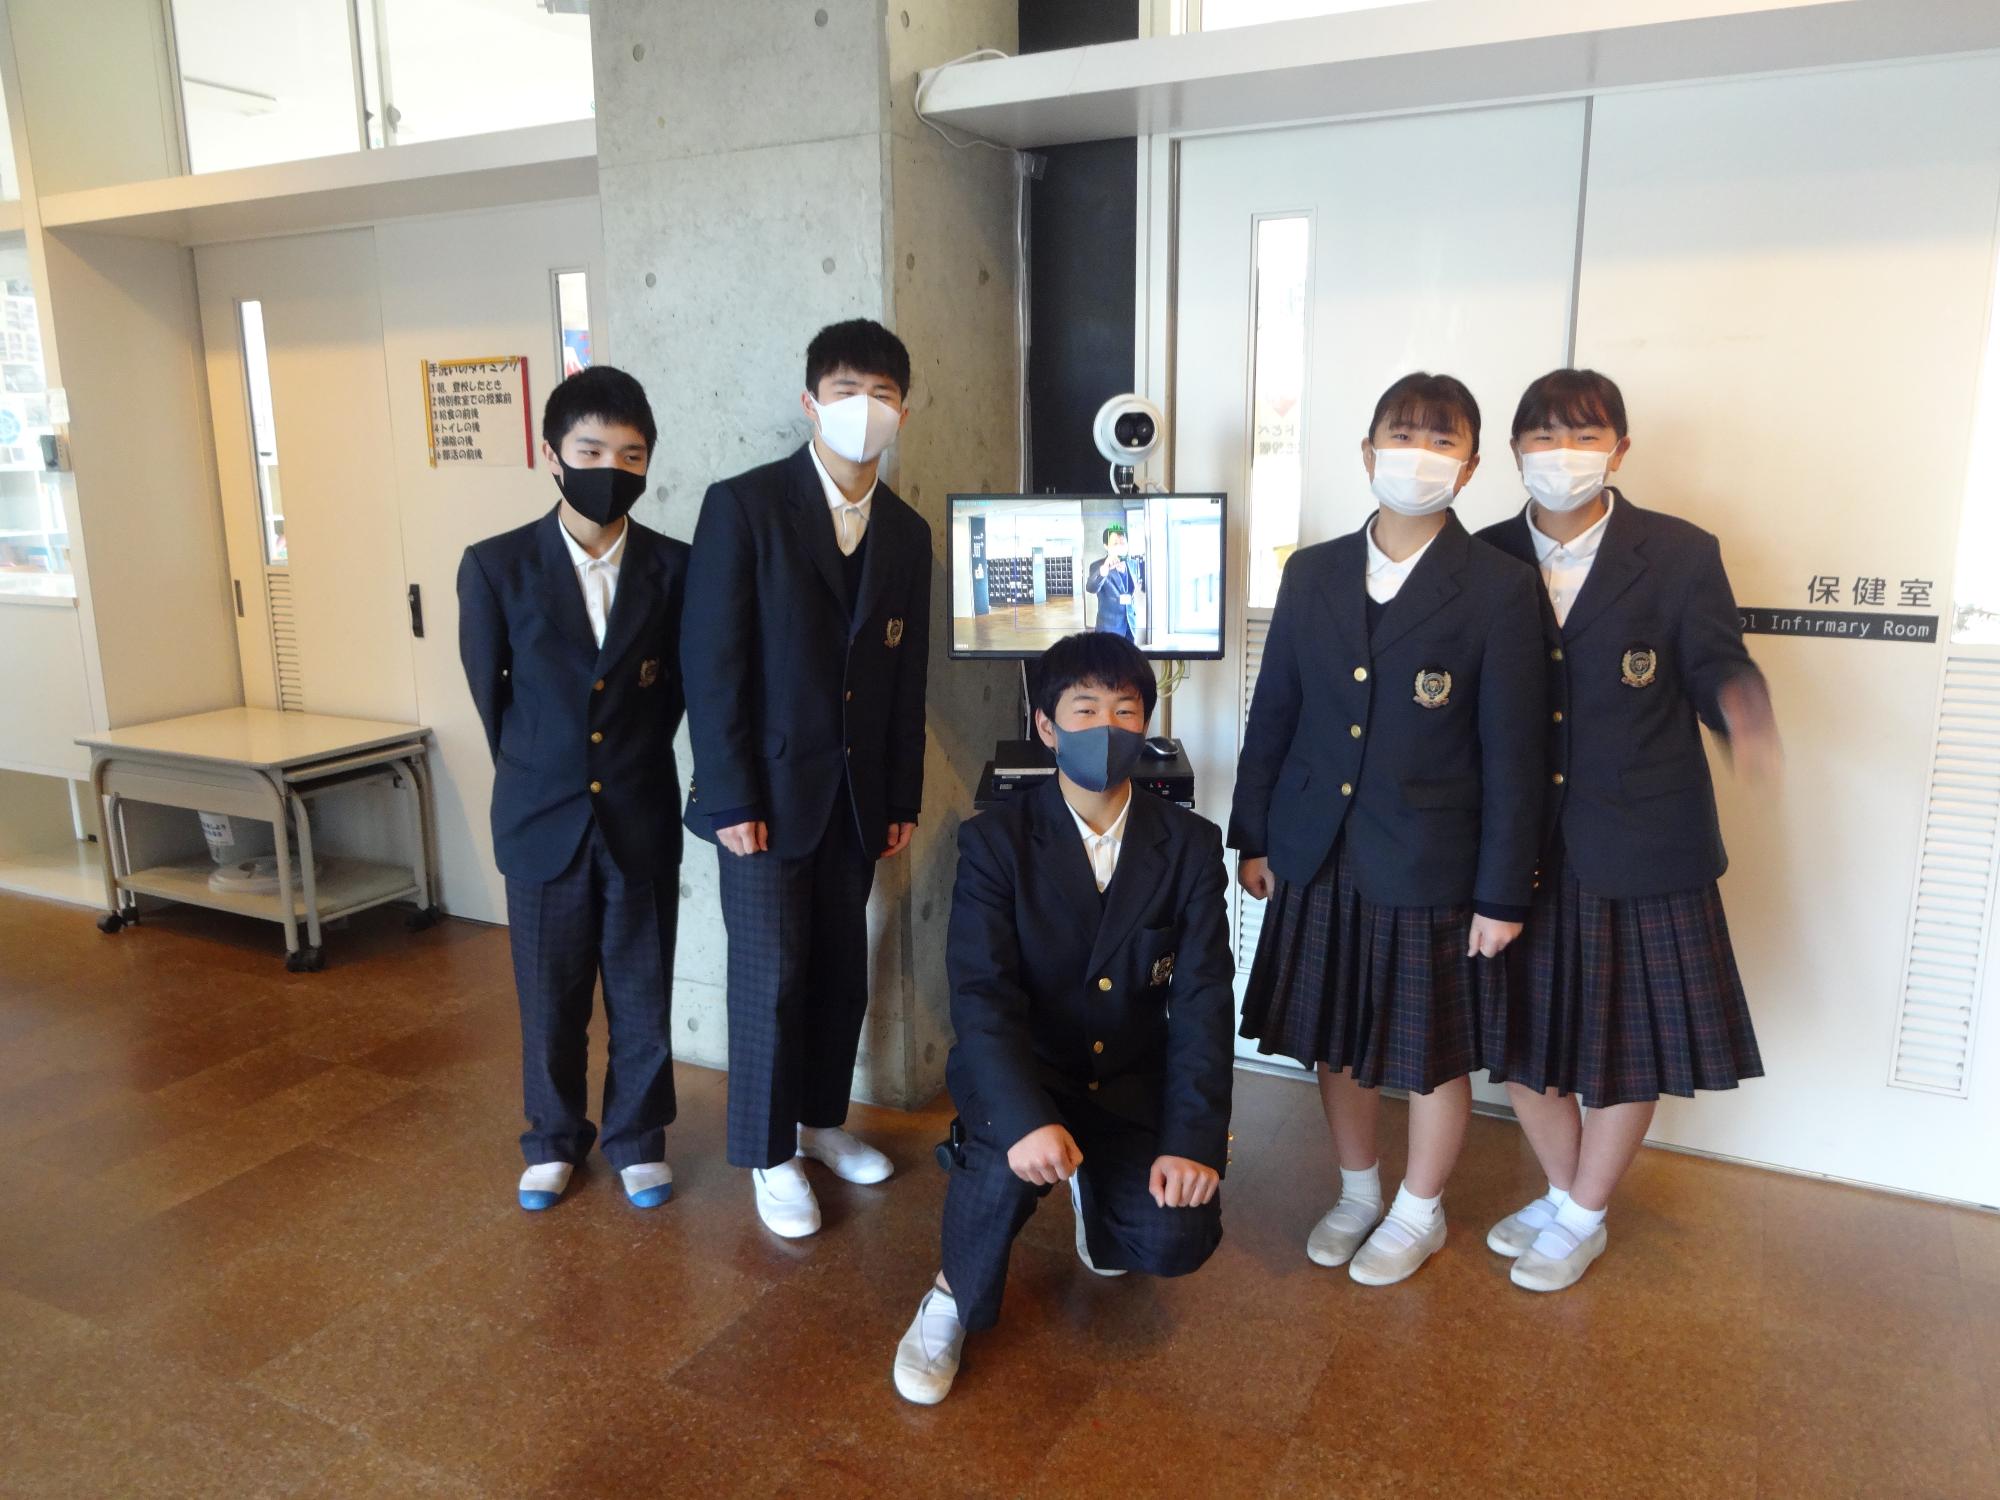 サーモグラフィーカメラの前で並ぶ3人の男子中学生と2人の女子中学生